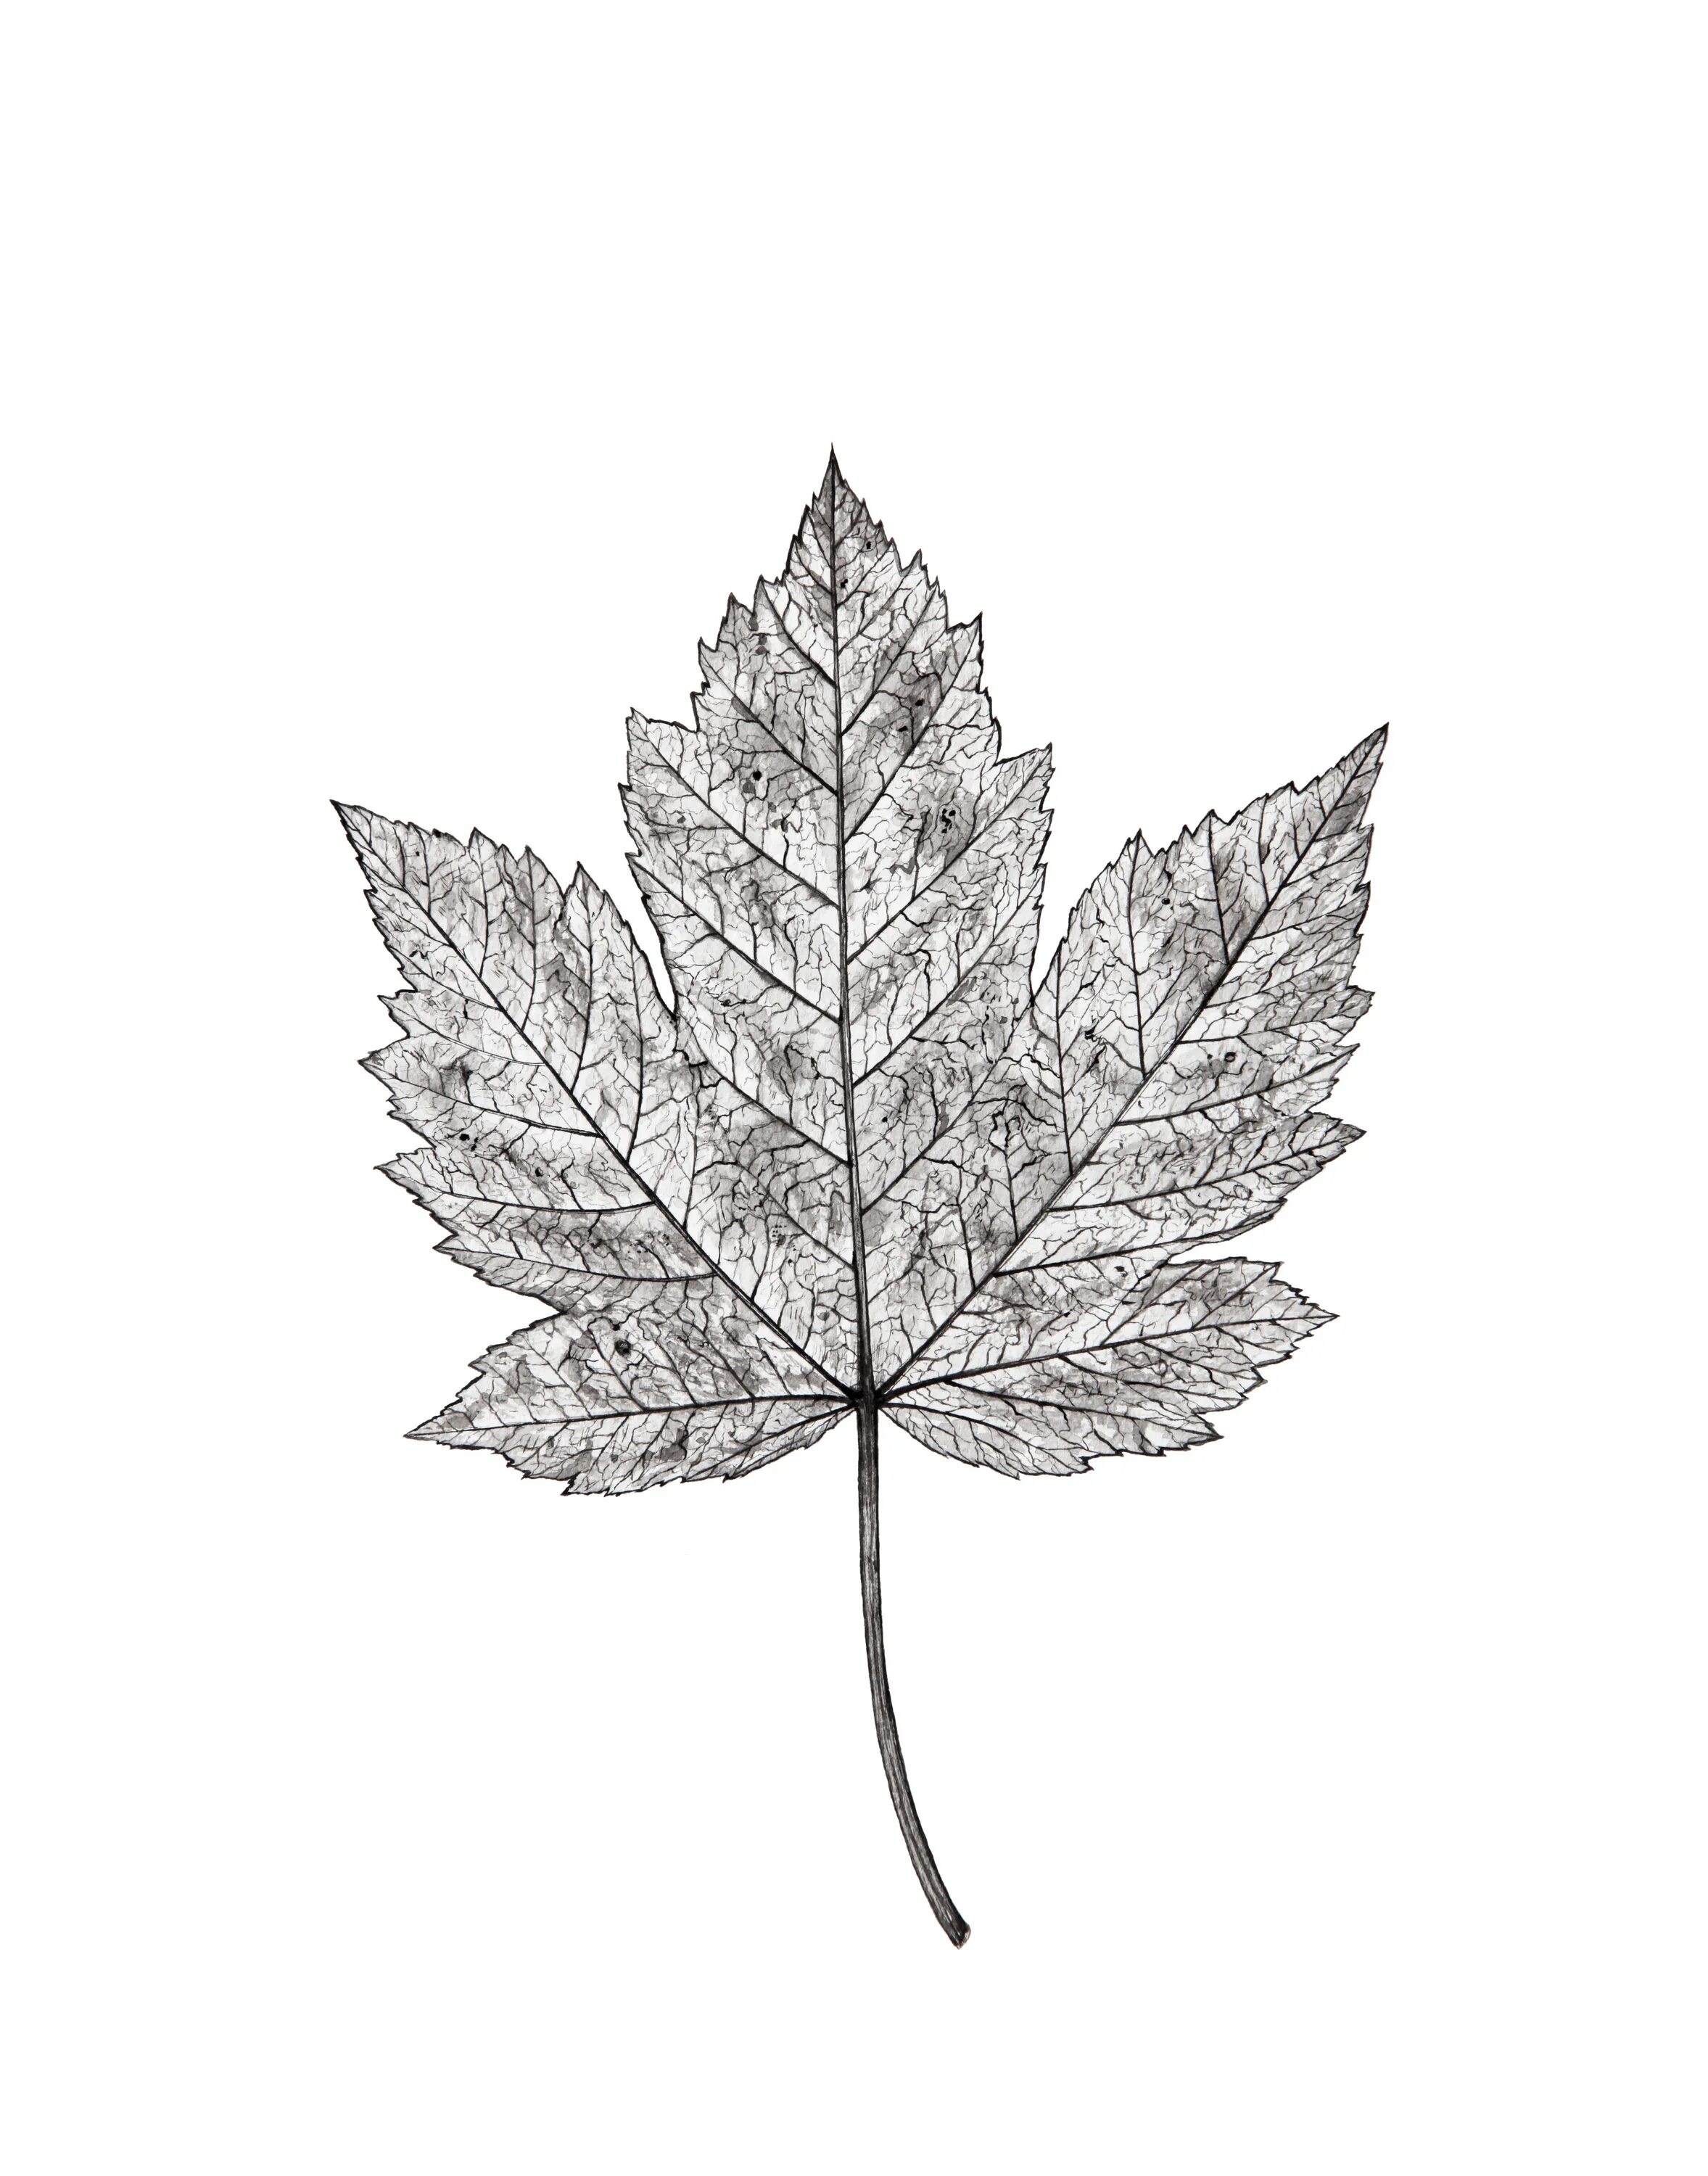 Черно белые картинки листьев. Листья деревьев. Листья эскиз. Листья иллюстрация. Листок дерева.